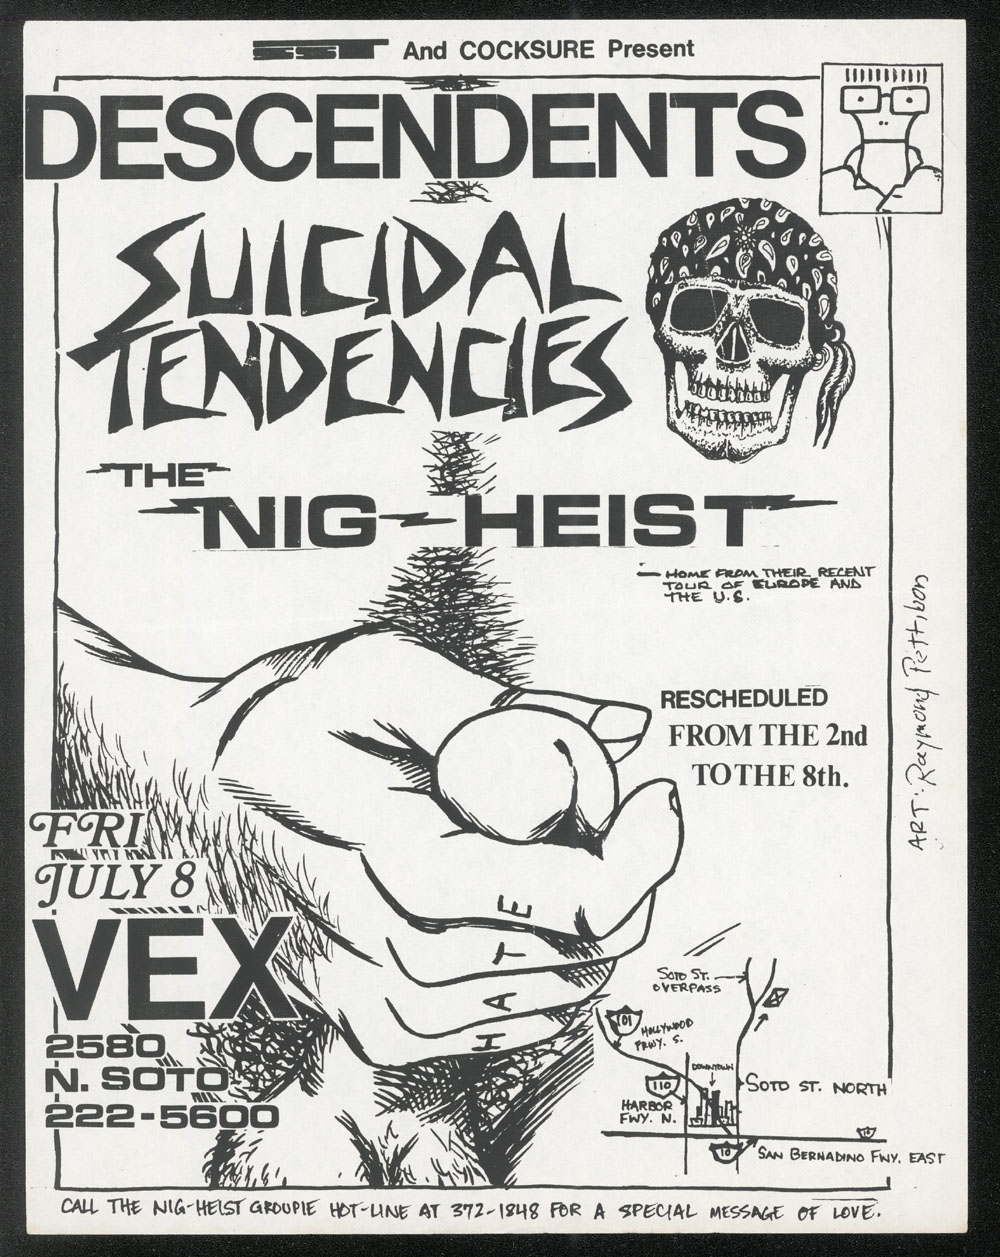 1983 ~ DESCENDENTS at the Vex (LA)